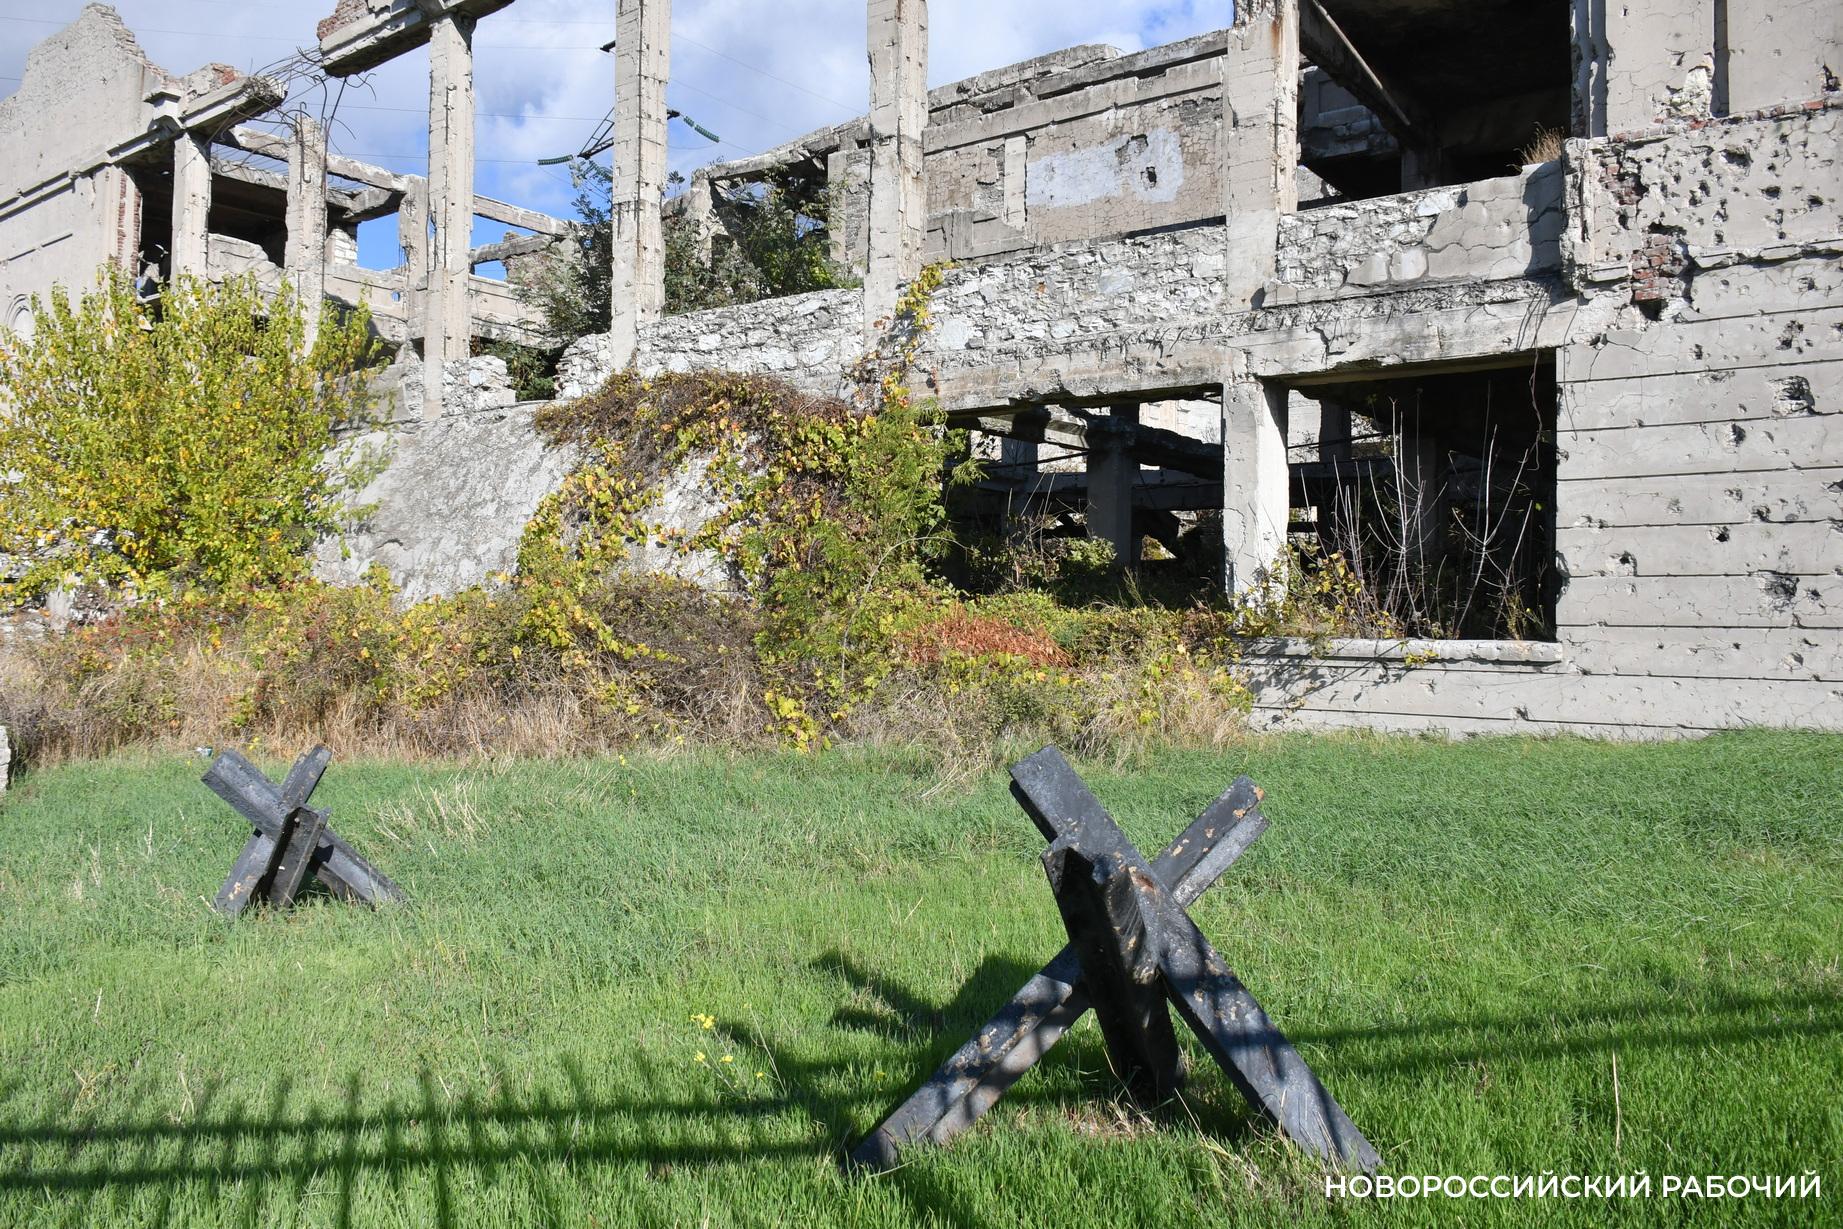 Руины Дворца цементников, расстрелянный вагон, танк – героический маршрут для экскурсии в Восточном районе Новороссийска